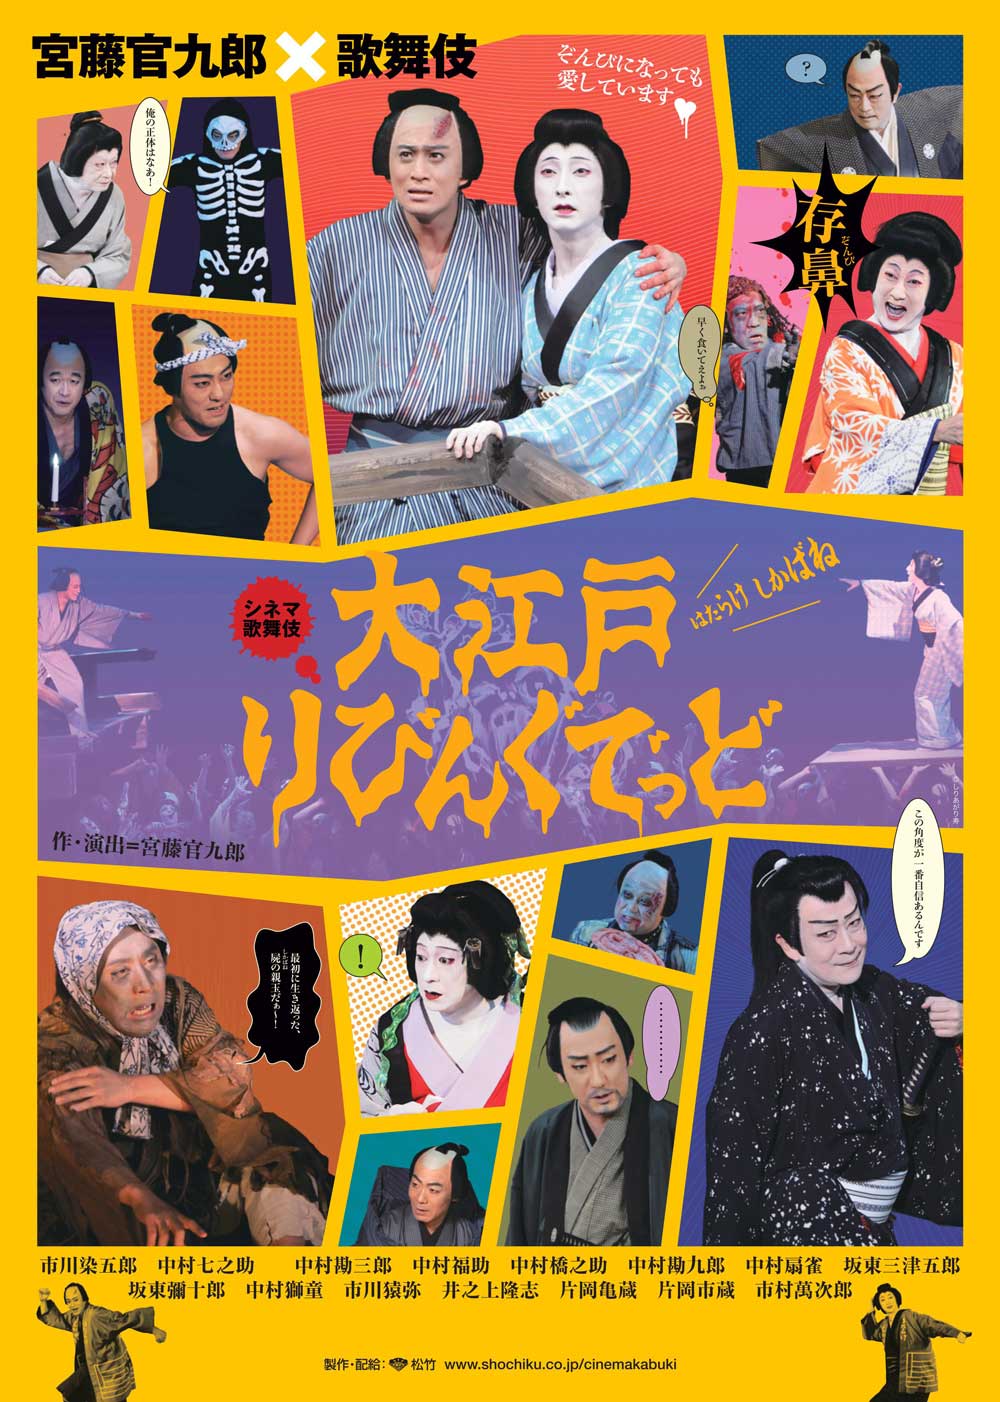 シネマ歌舞伎『大江戸りびんぐでっど』が「くさやバー」とタイアップ